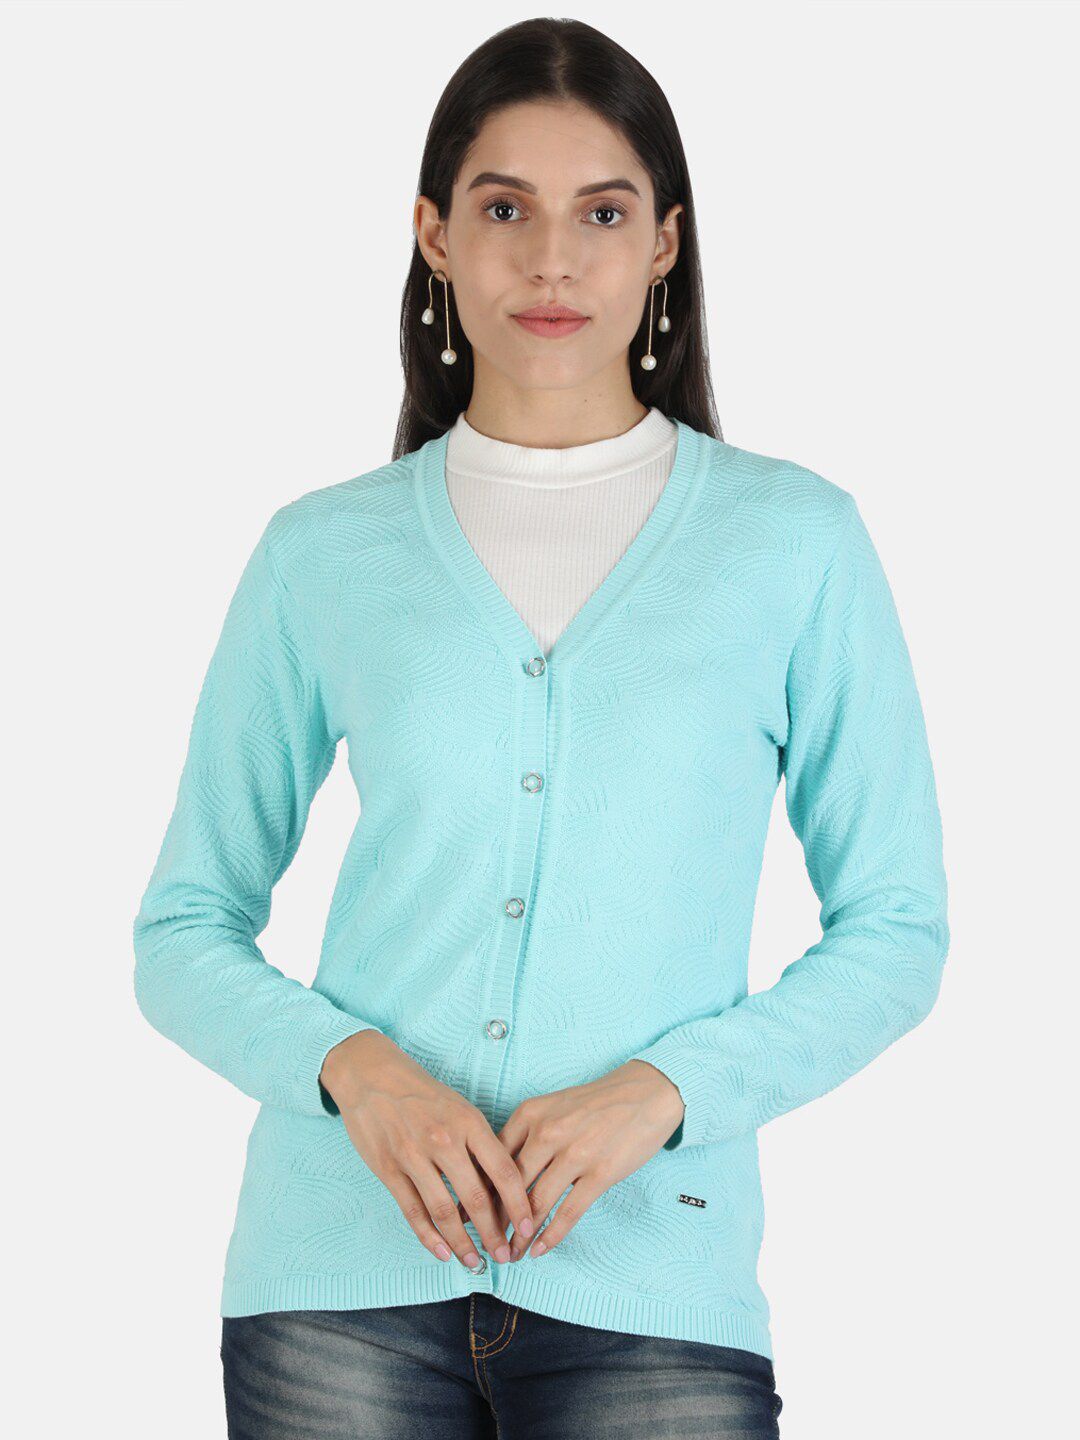 Monte Carlo Women Sea Green Woolen Cardigan Sweater Price in India